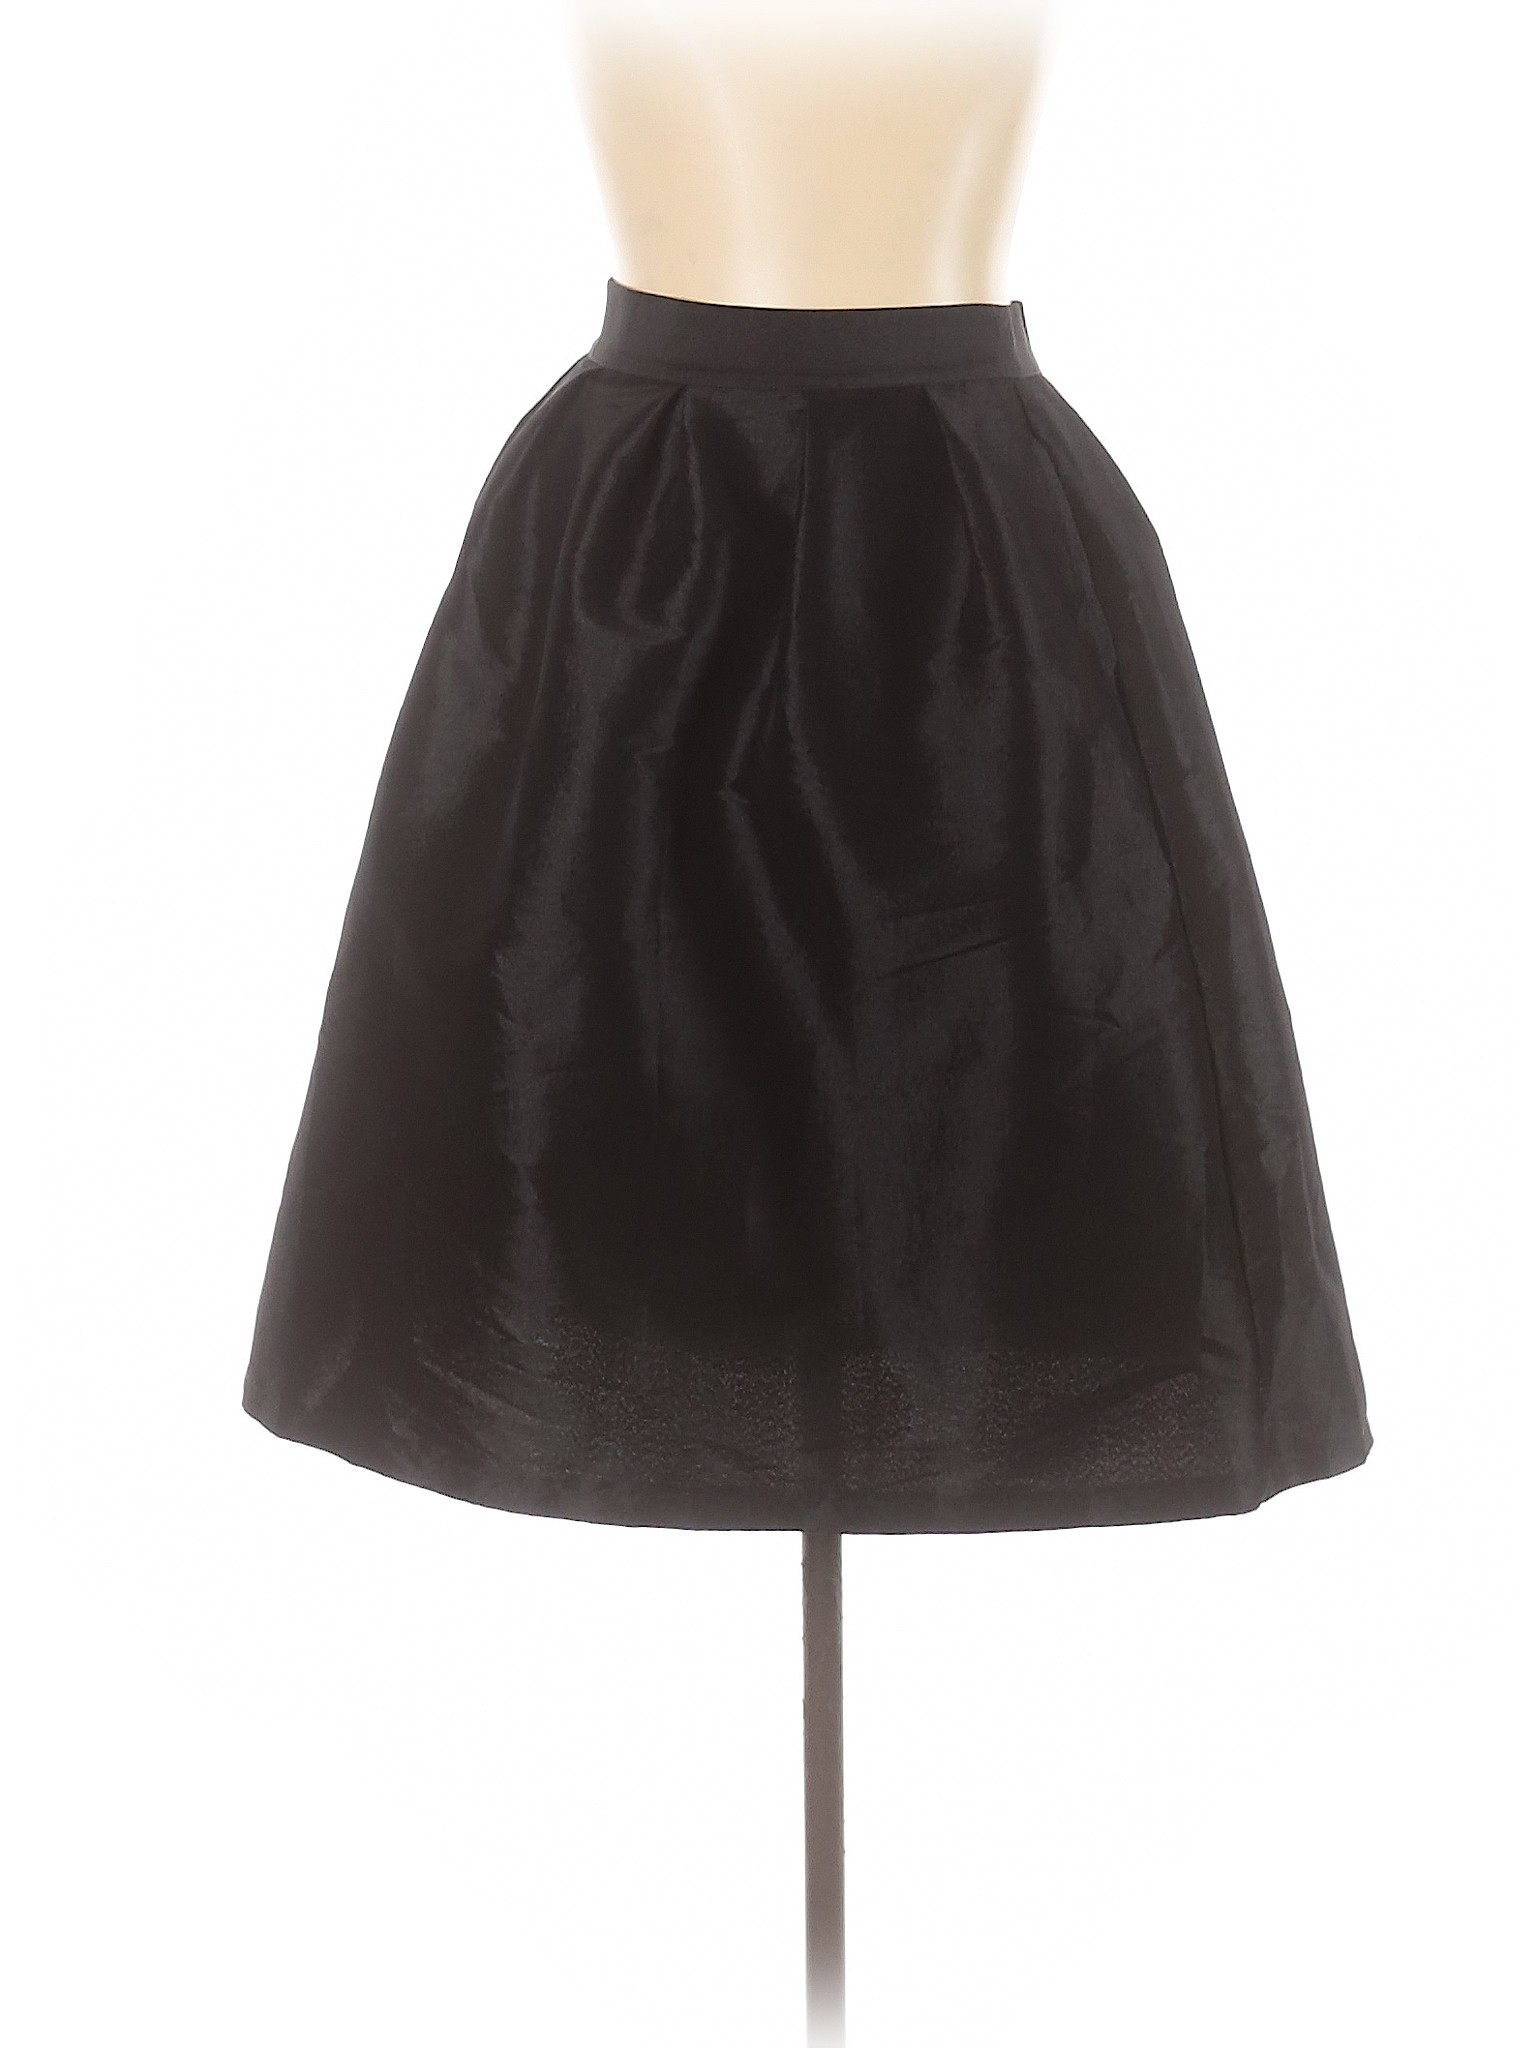 Assorted Brands Women Black Formal Skirt L | eBay